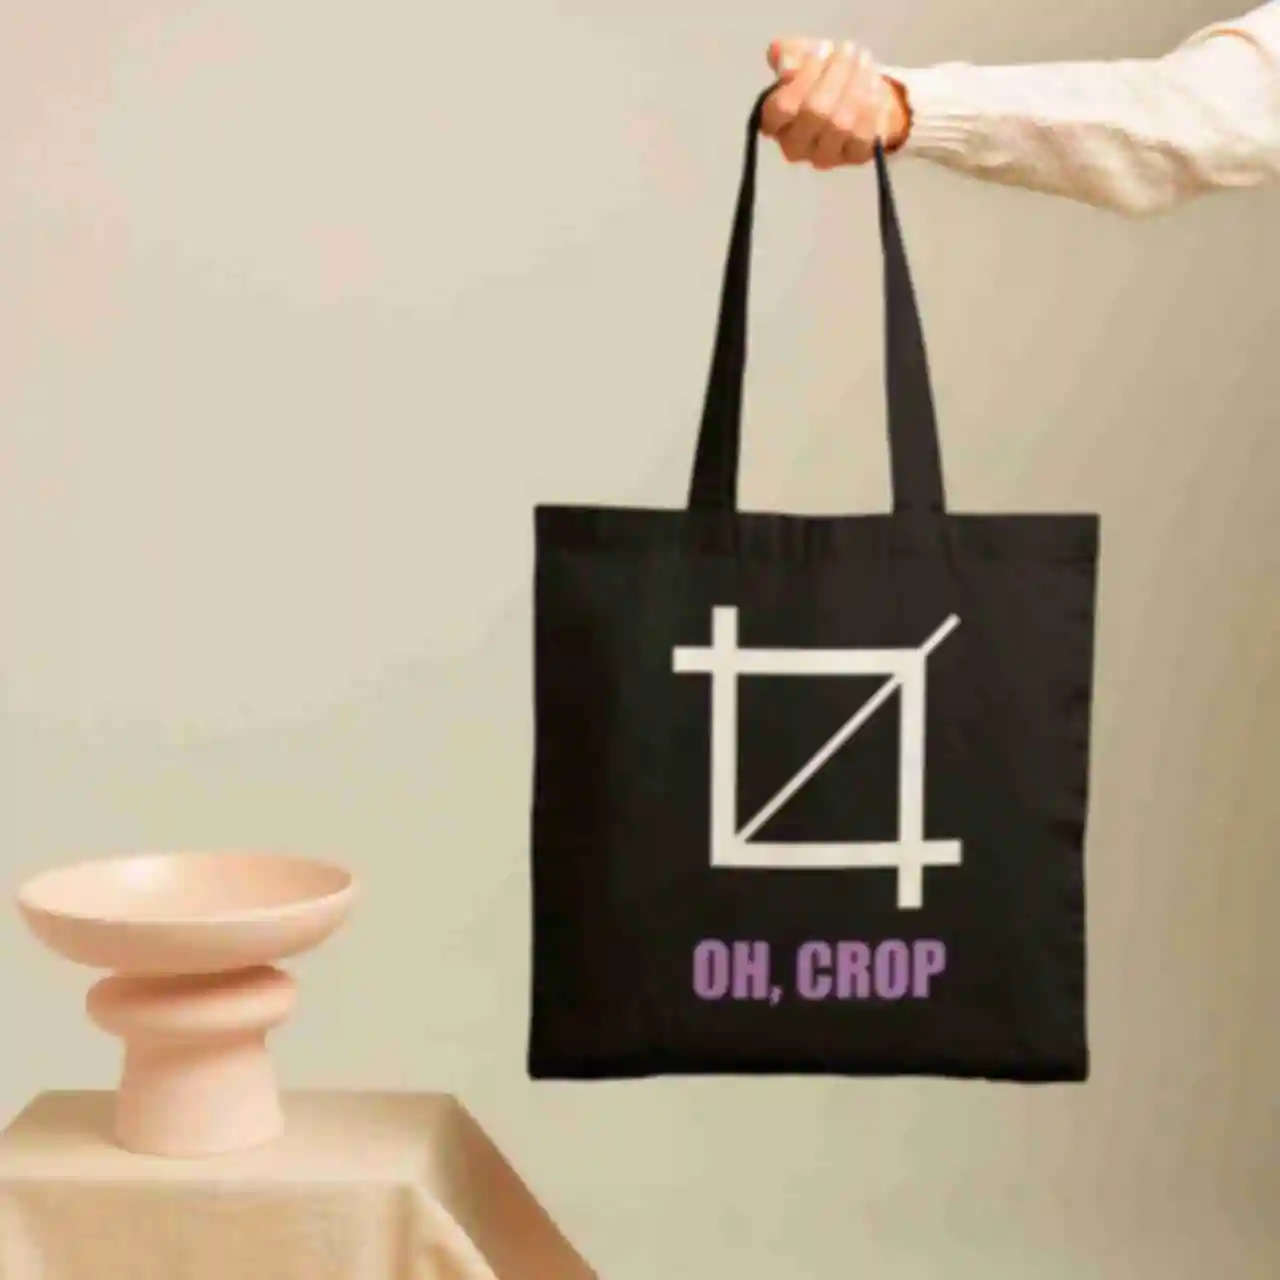 Шоппер №7 • OH Crop • Мерч для иллюстратора или дизайнера • Стильная дизайнерская эко-сумка